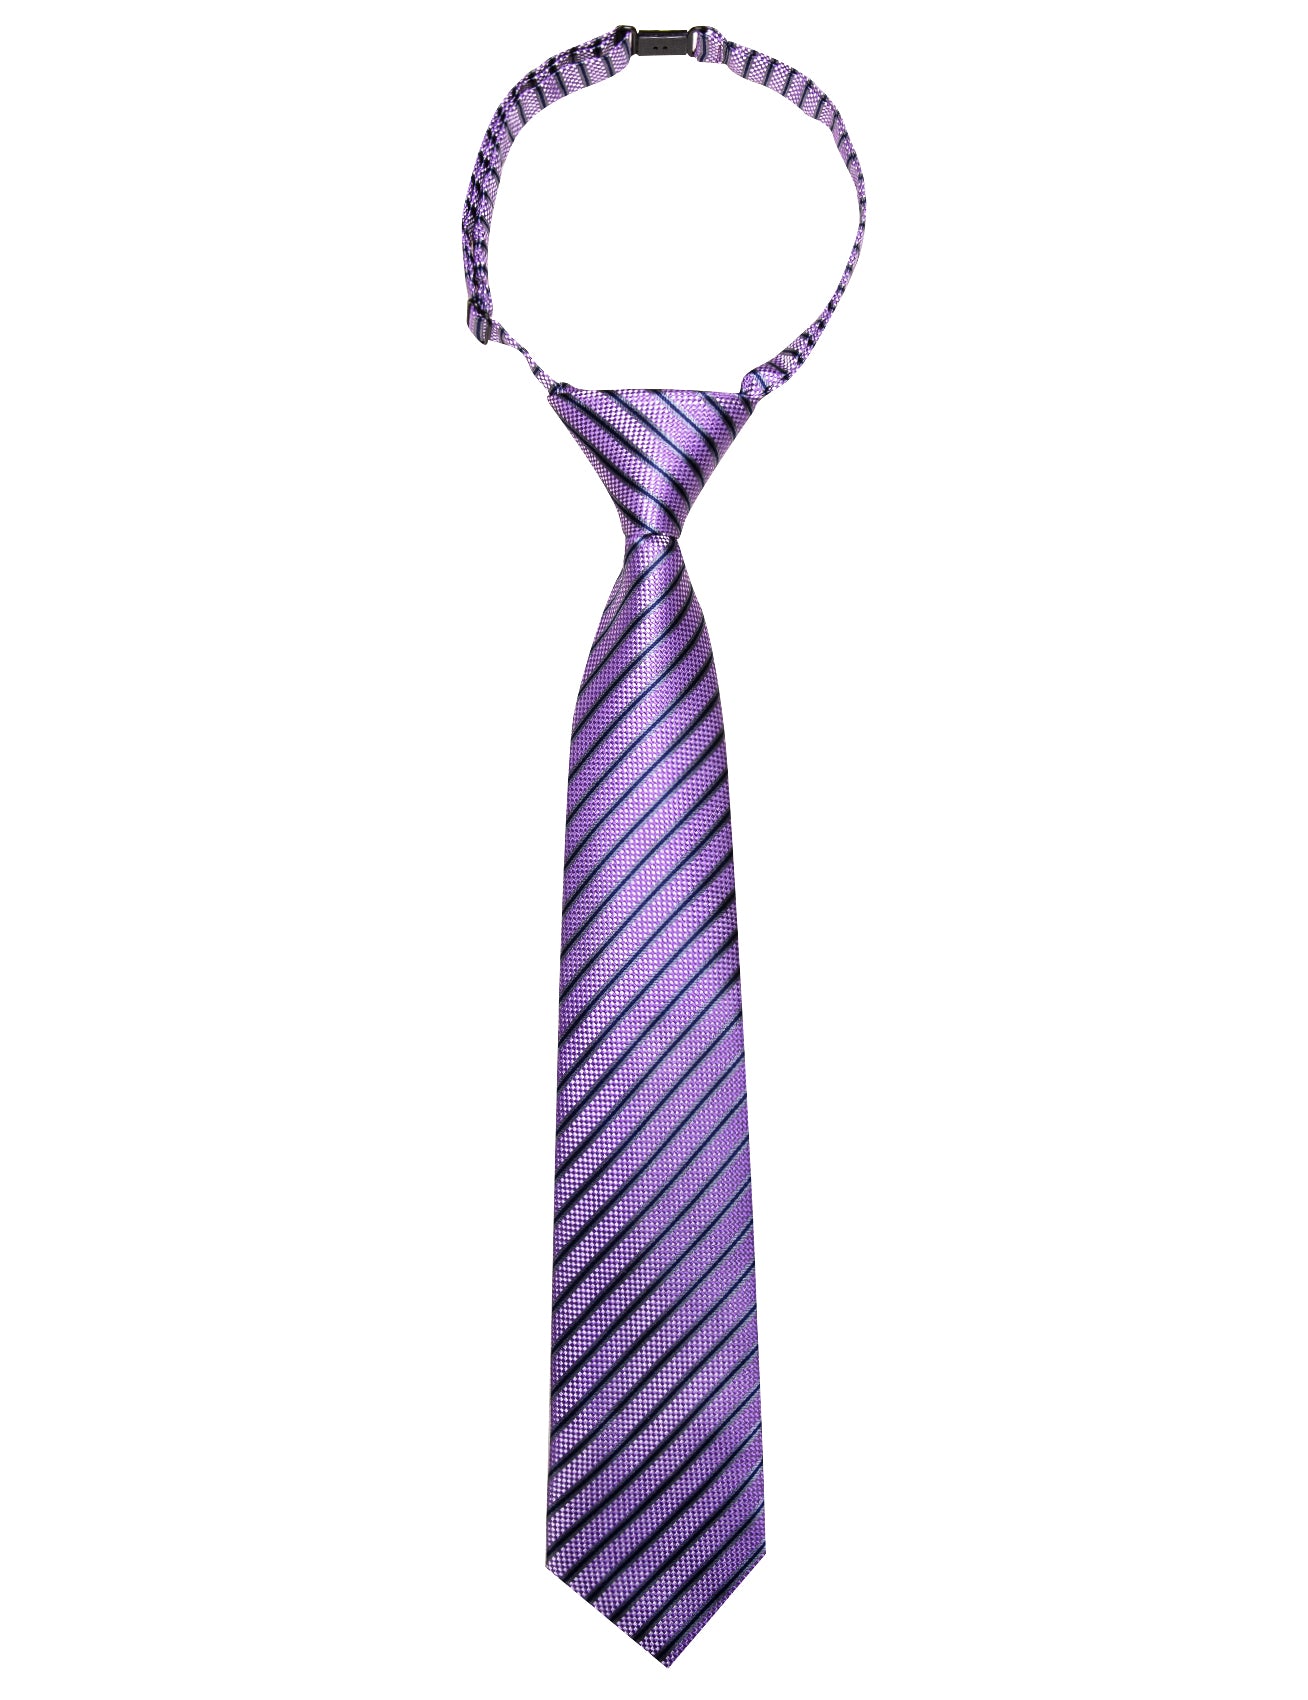 Barry.wang Kids Tie Purple Blue Grey Striped Children's Silk Tie Hanky Set